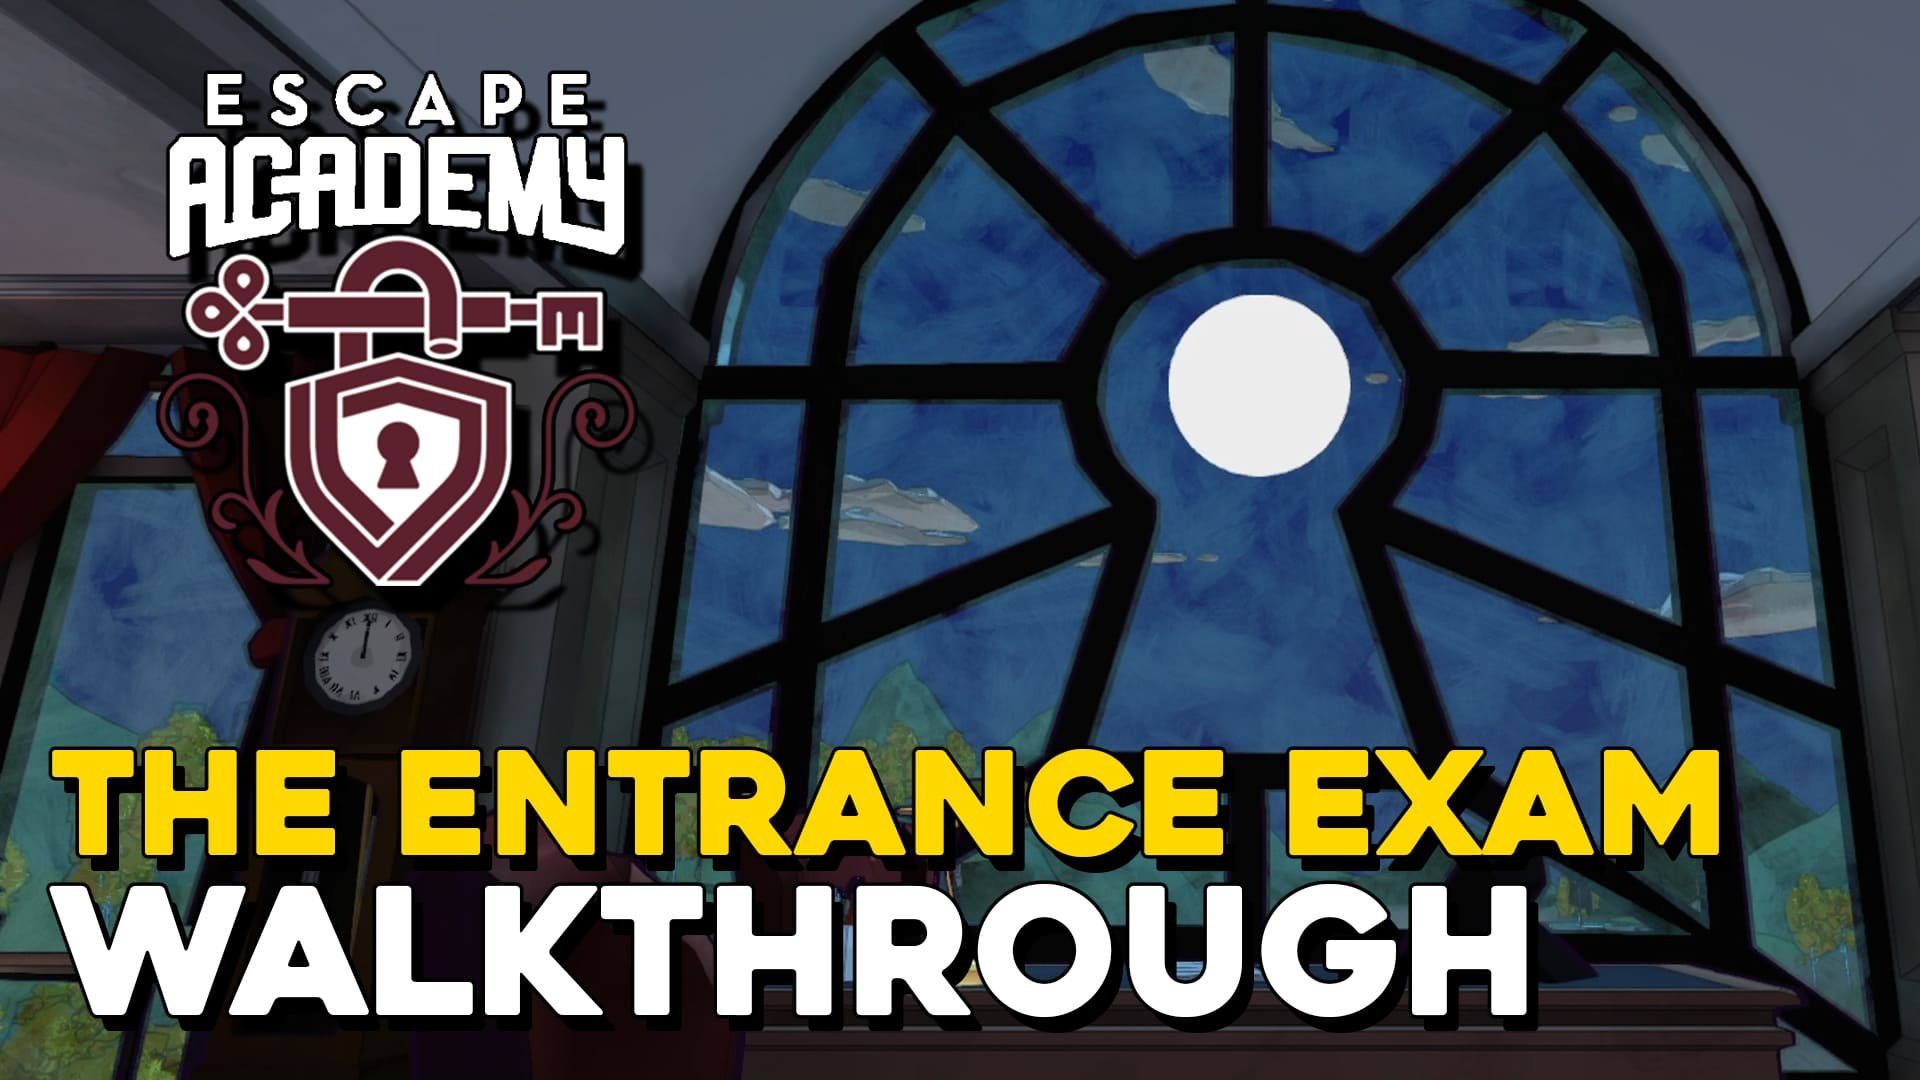 Escape Academy The Entrance Exam Walkthrough (copia) (copia) (Copy)